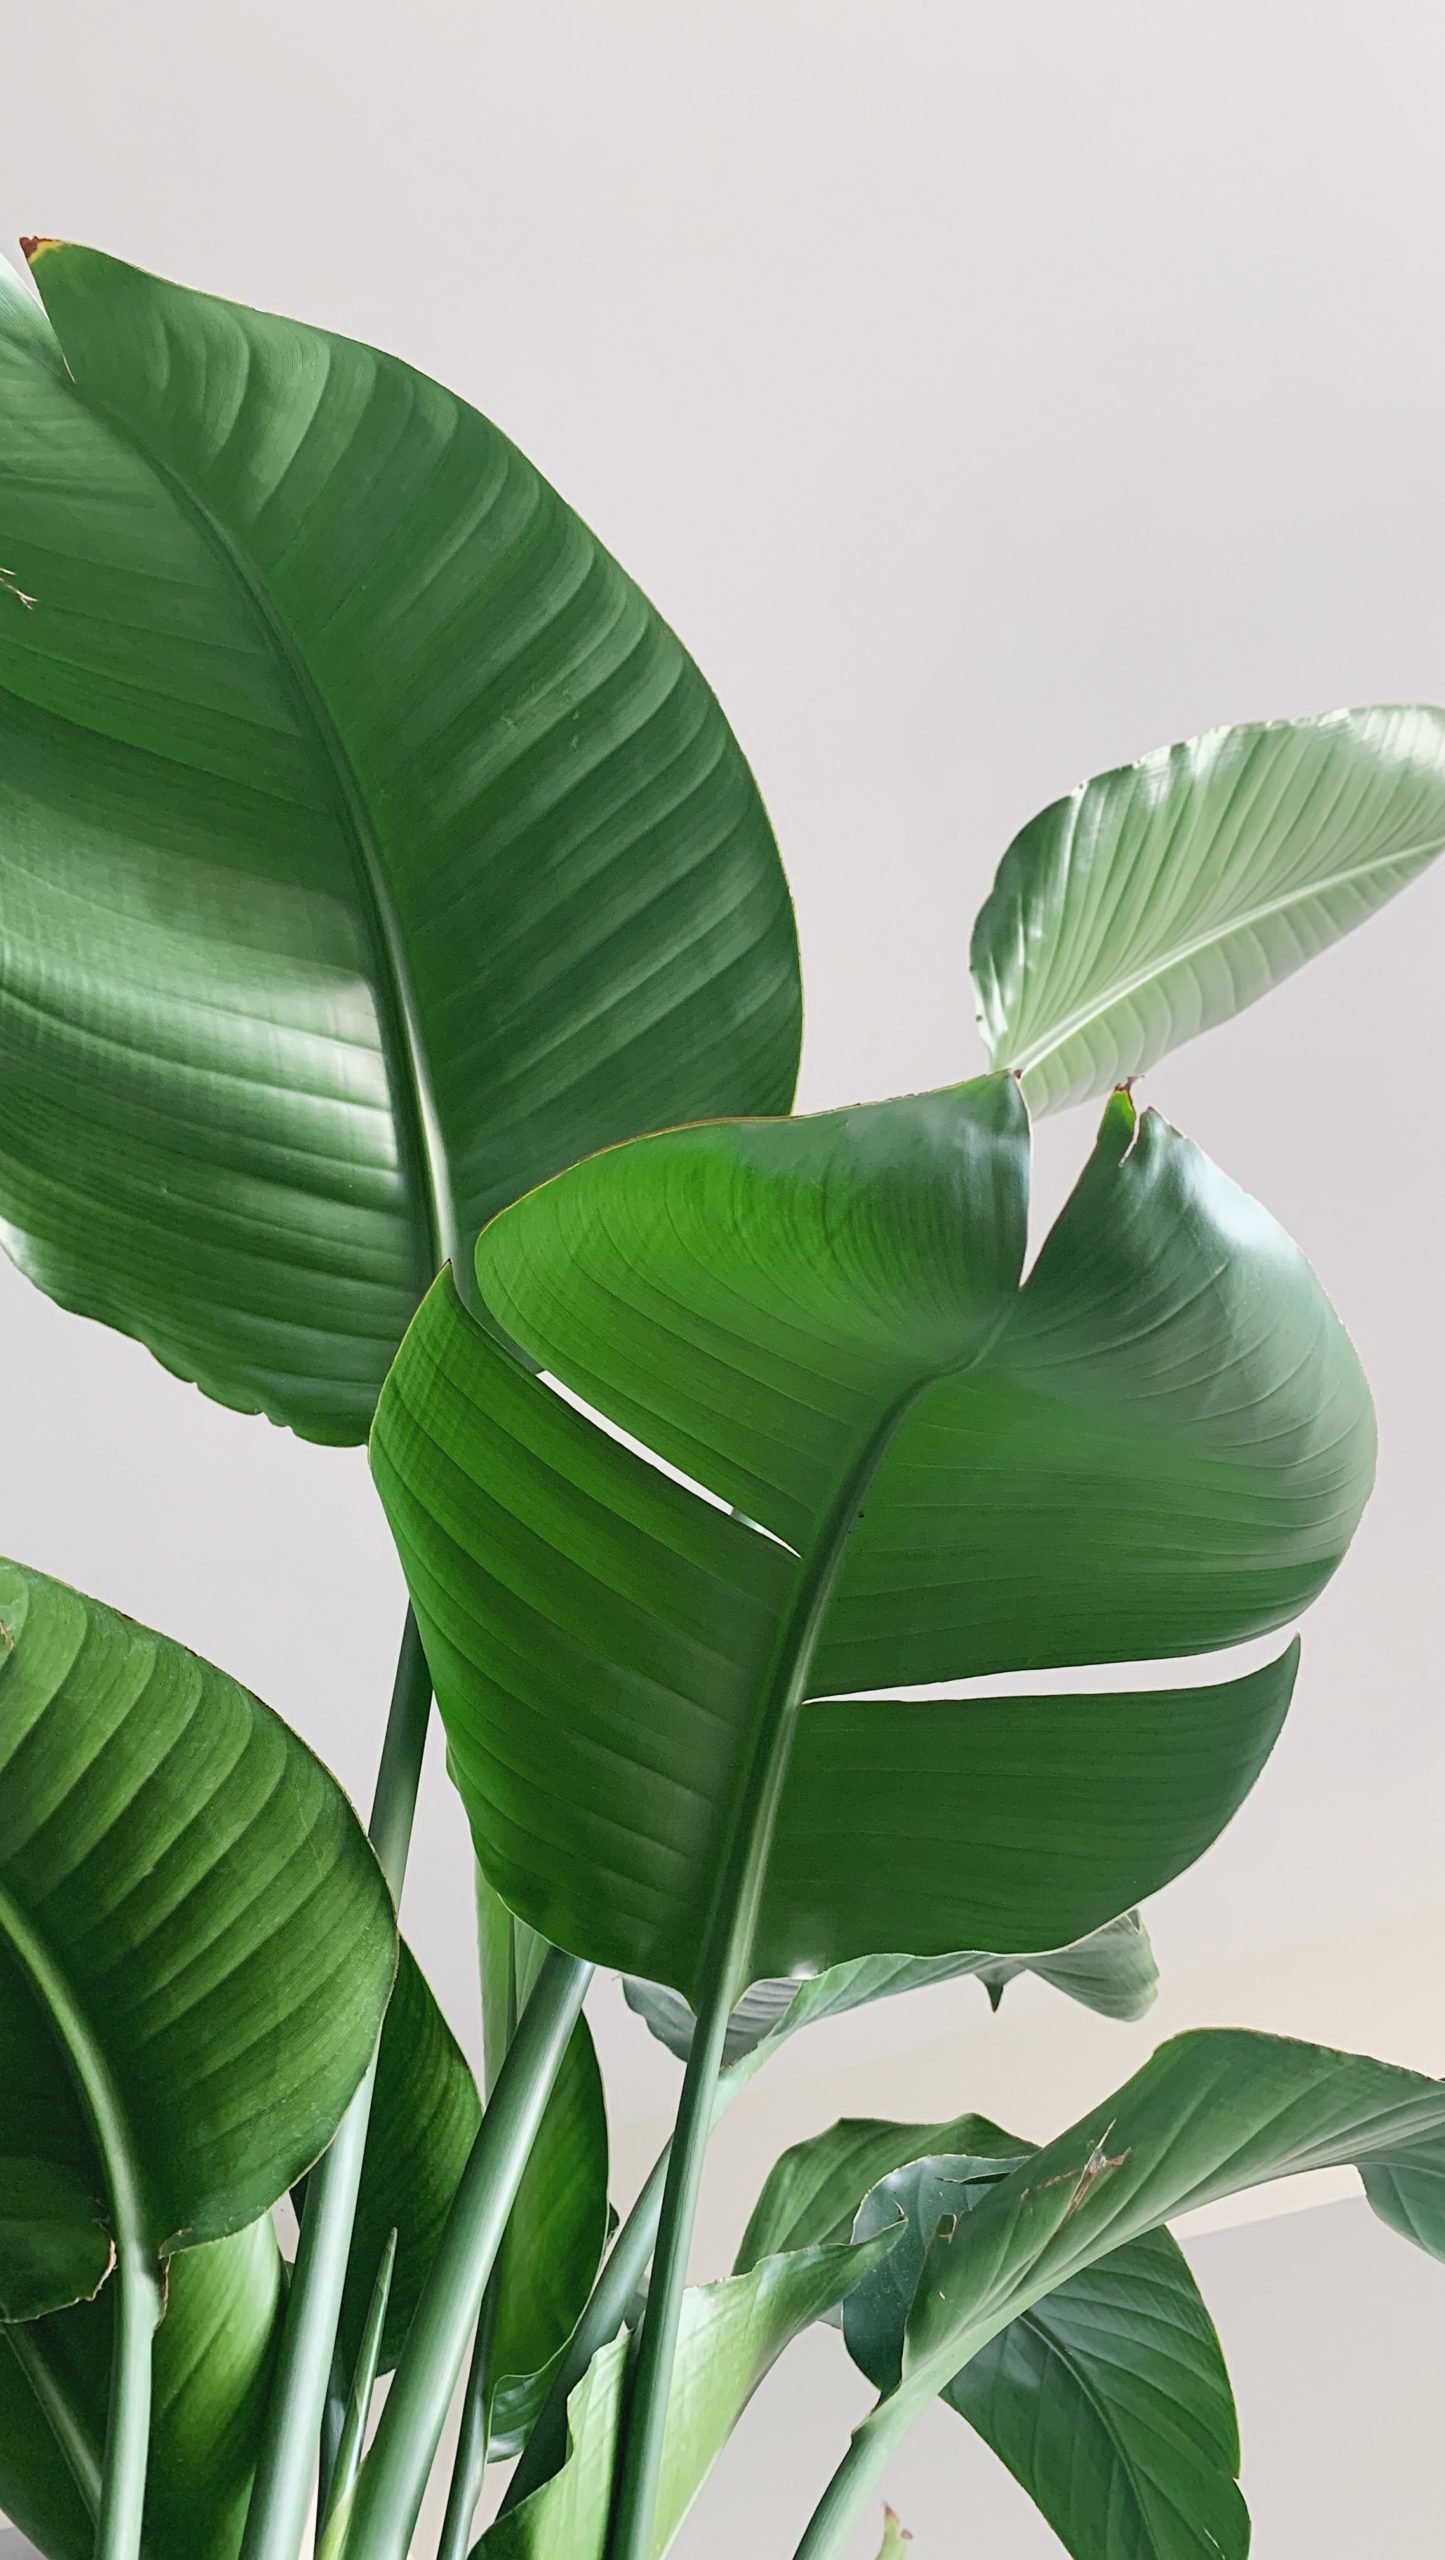 smartphone photograph of plants taken by Devon Steele